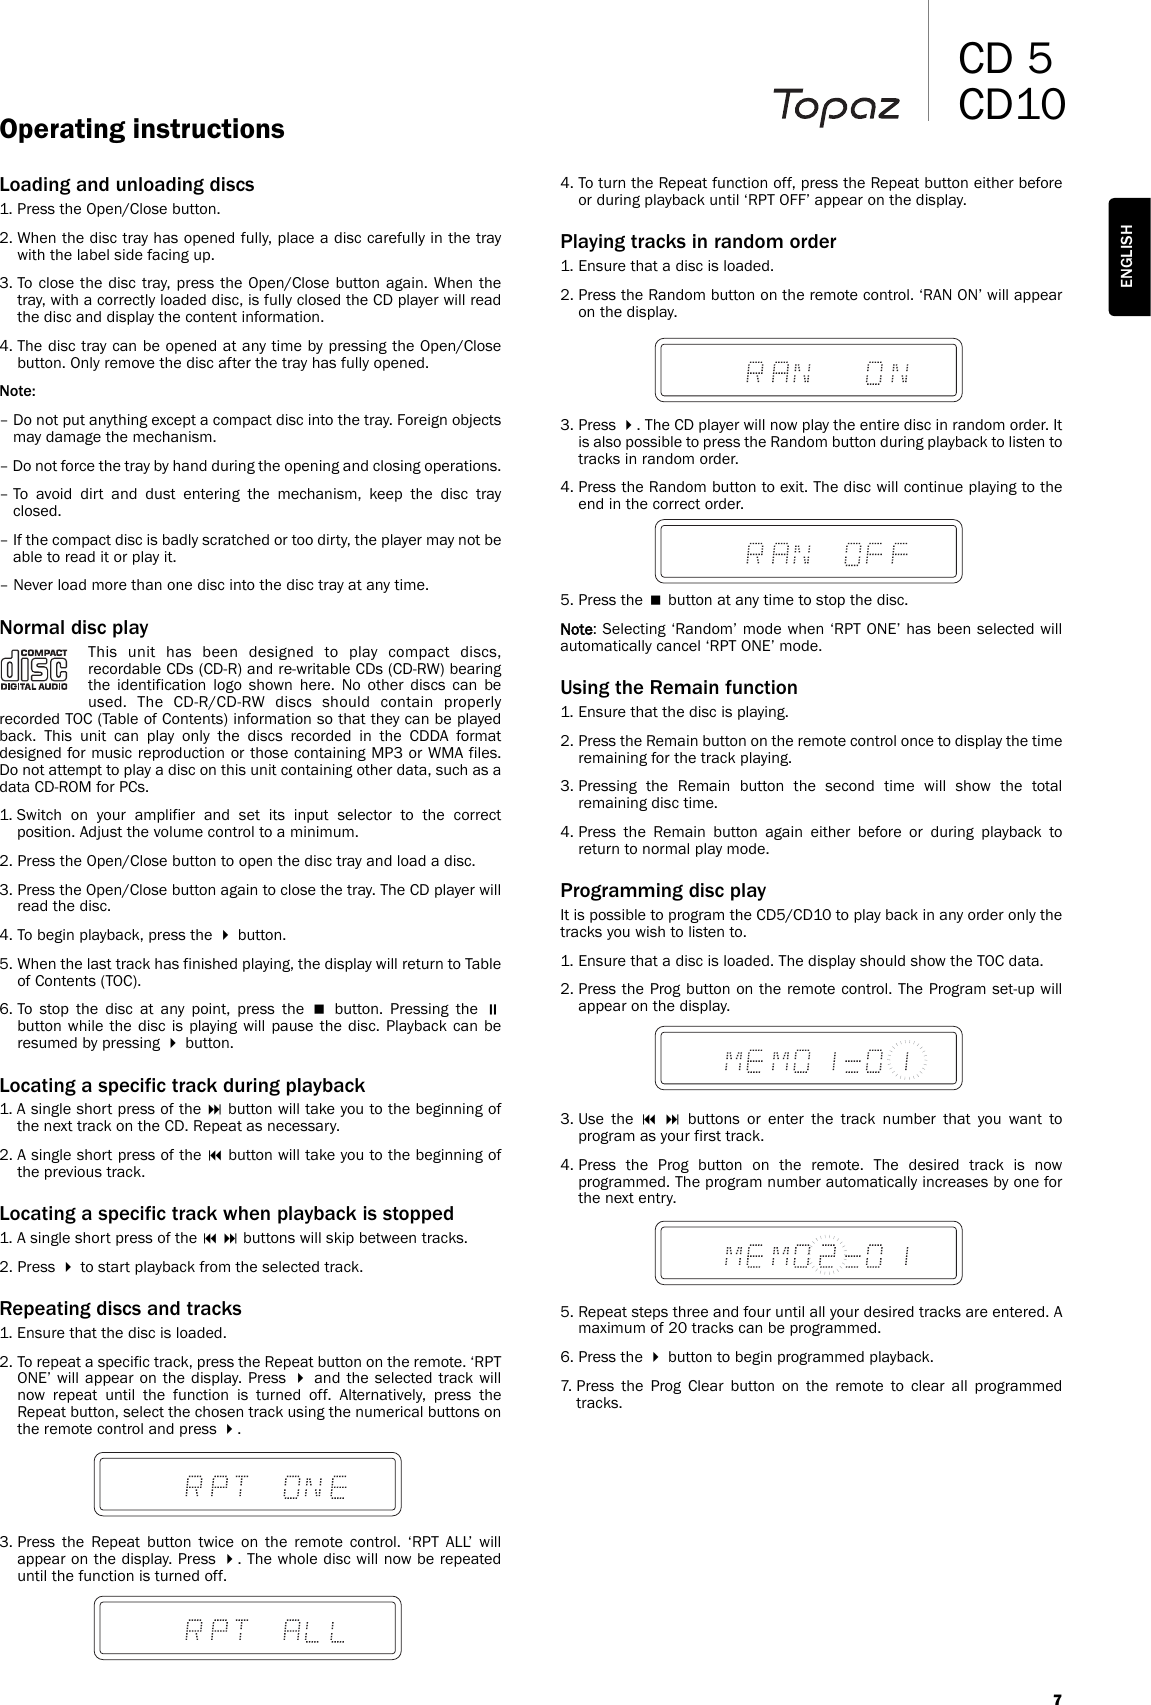 Page 7 of 10 - Cambridge-Audio Cambridge-Audio-Topaz-Cd10-Users-Manual-  Cambridge-audio-topaz-cd10-users-manual